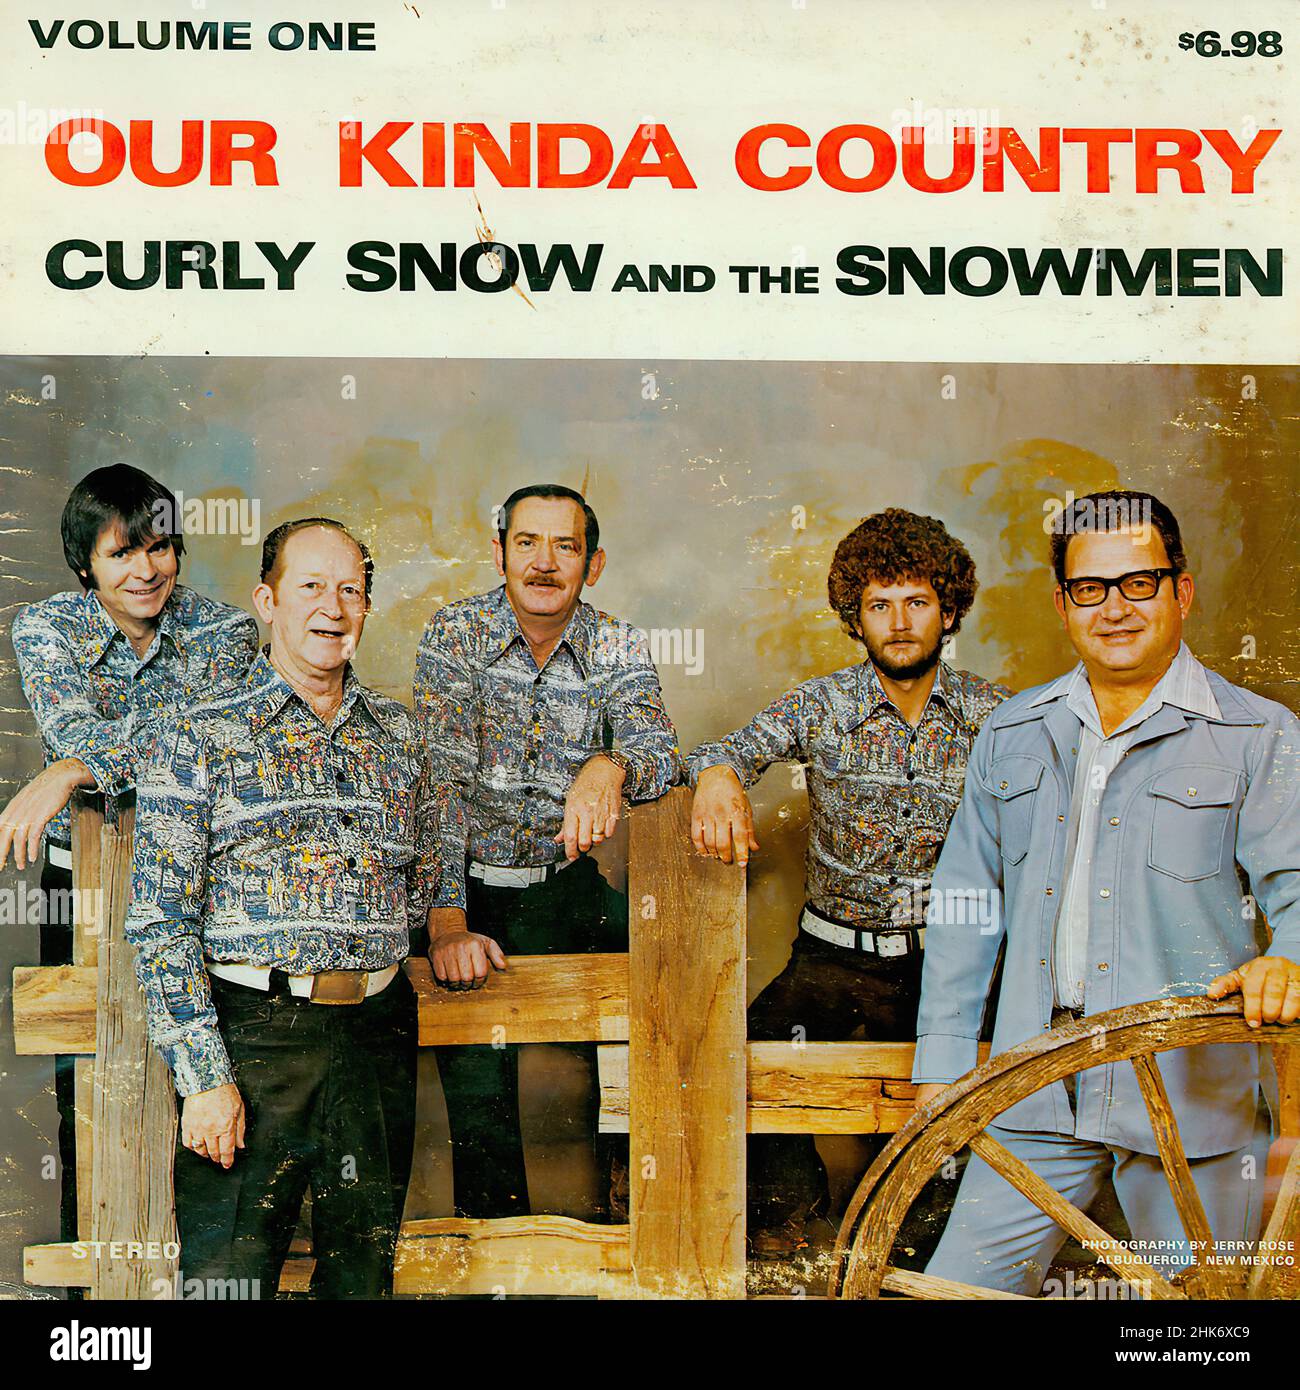 Our Kinda Country - Vintage Vinyl Album Stock Photo